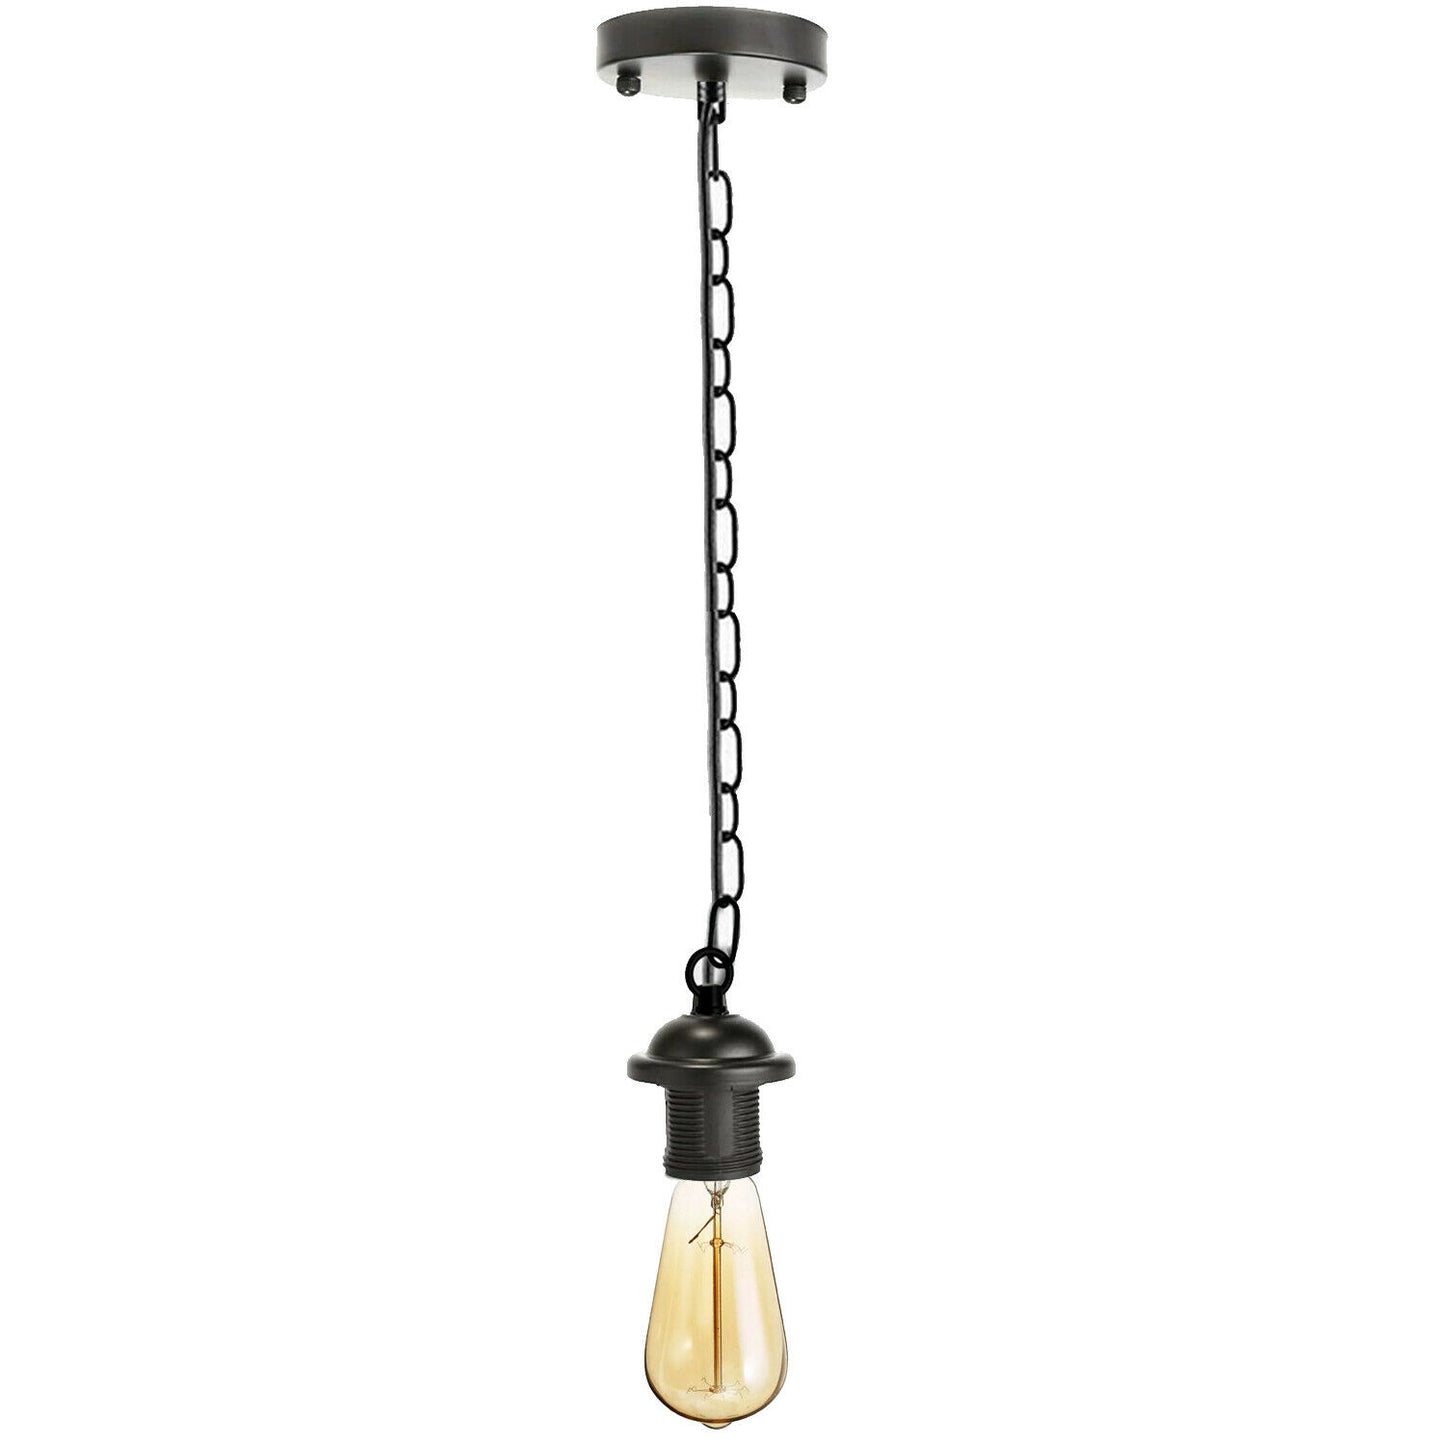 Black Metal Ceiling Rose & Chain Pendant Light Chandelier E27 Lamp Holder Pendant Light With Chain~1927